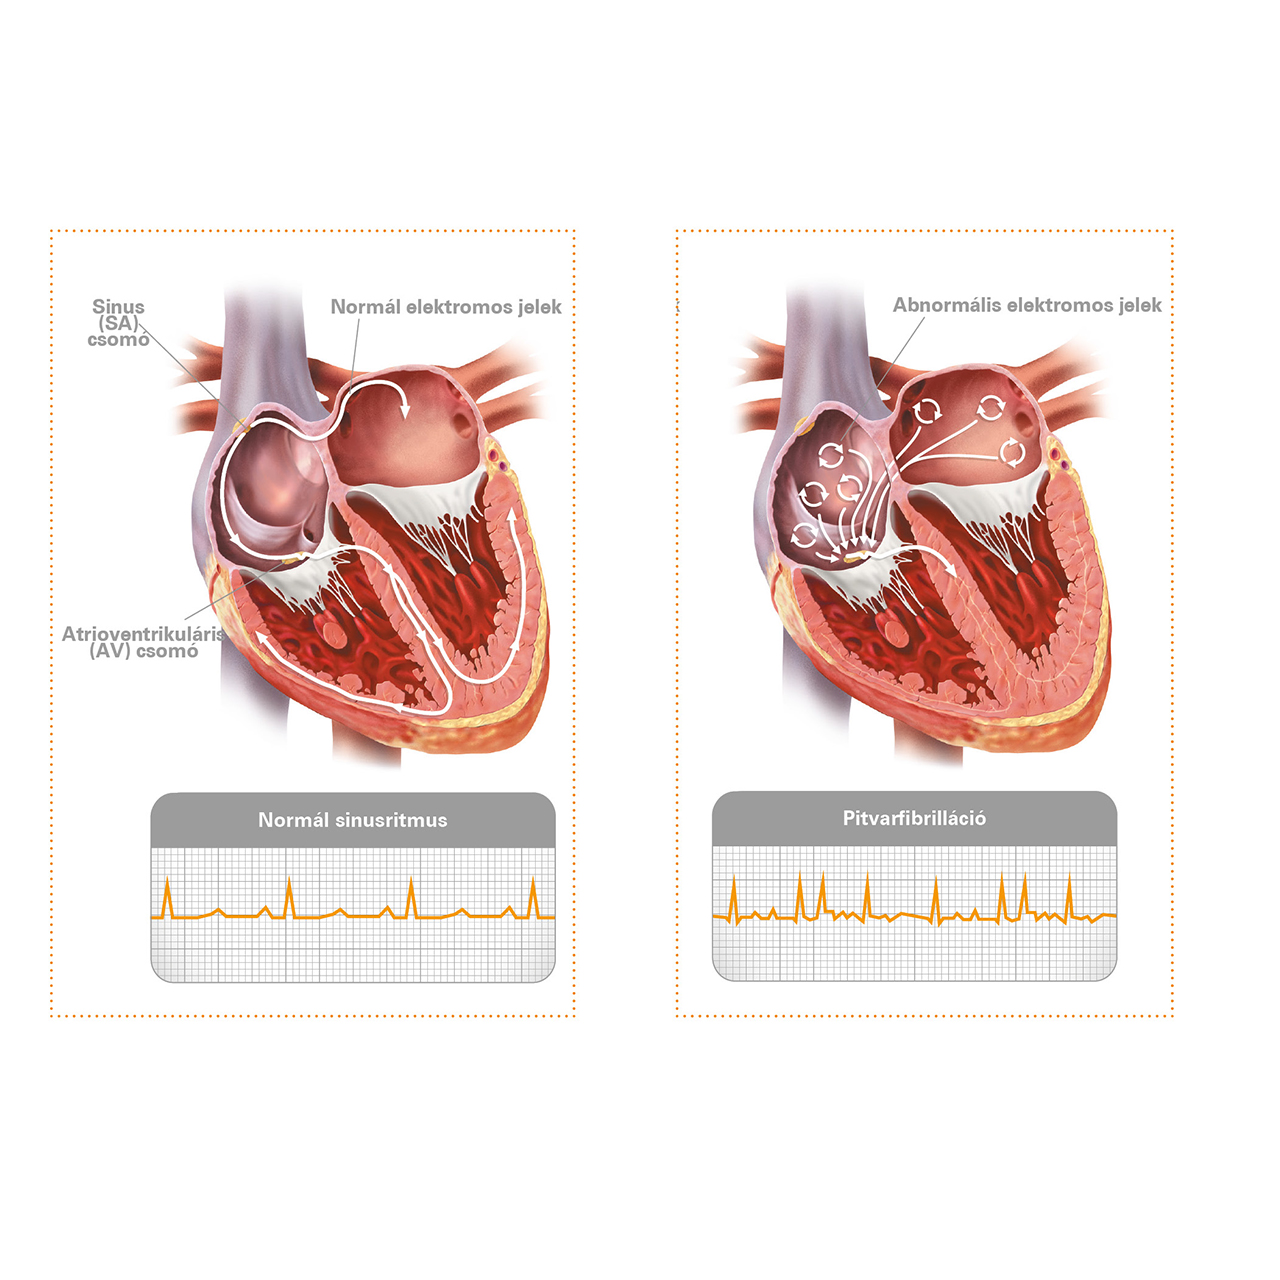 Pontosabb képet ad a budaörsi rendelő új szívultrahang-készüléke